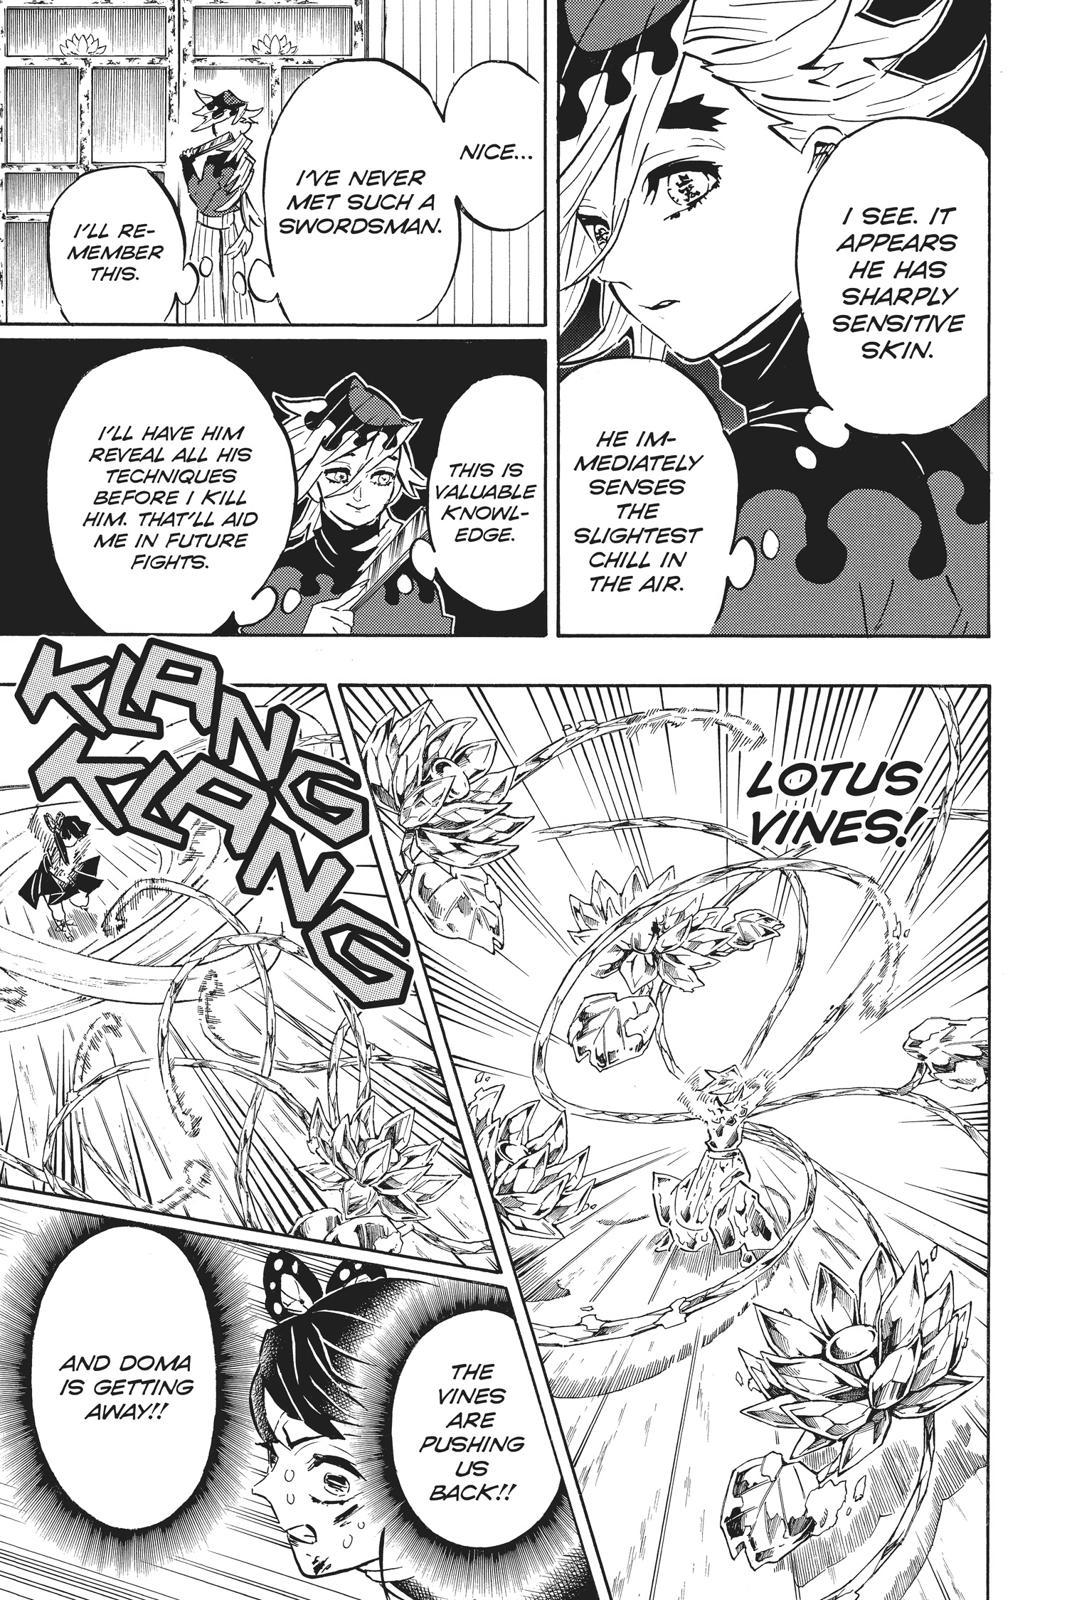 Demon Slayer Manga Manga Chapter - 161 - image 14